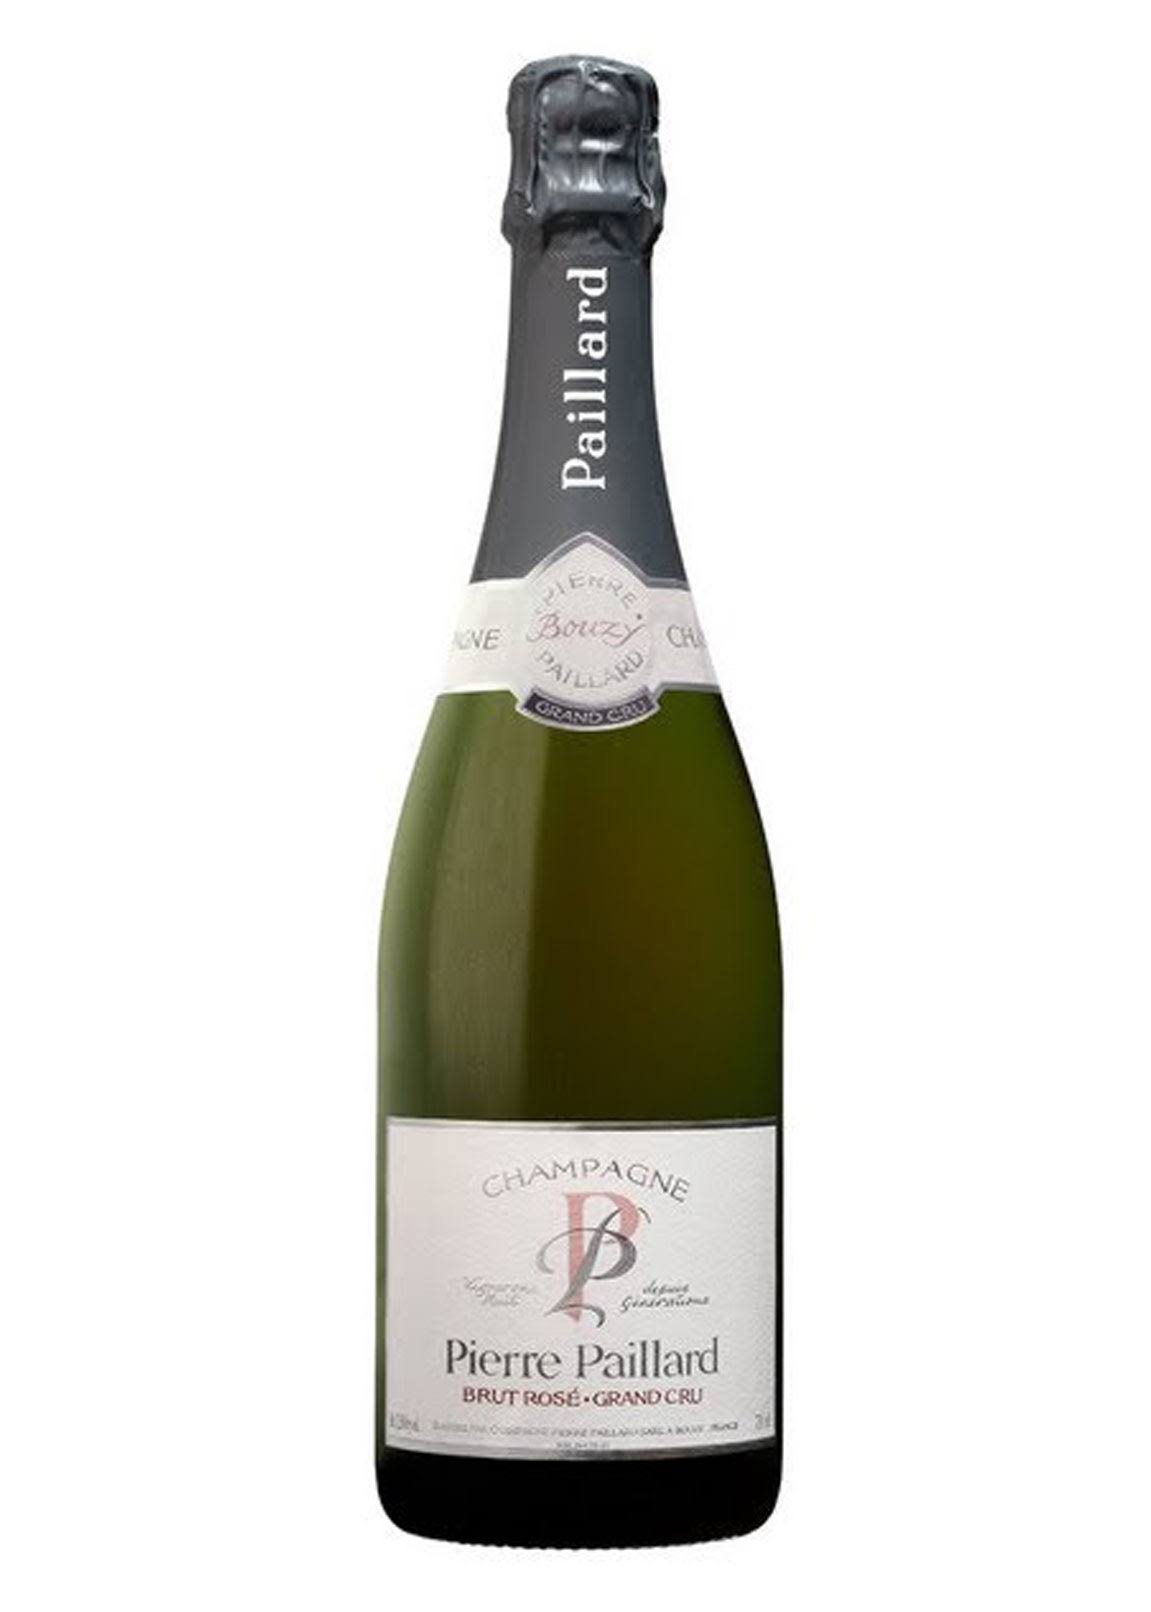 Champagne Pierre Paillard - Les Parcelles Bouzy Grand Cru